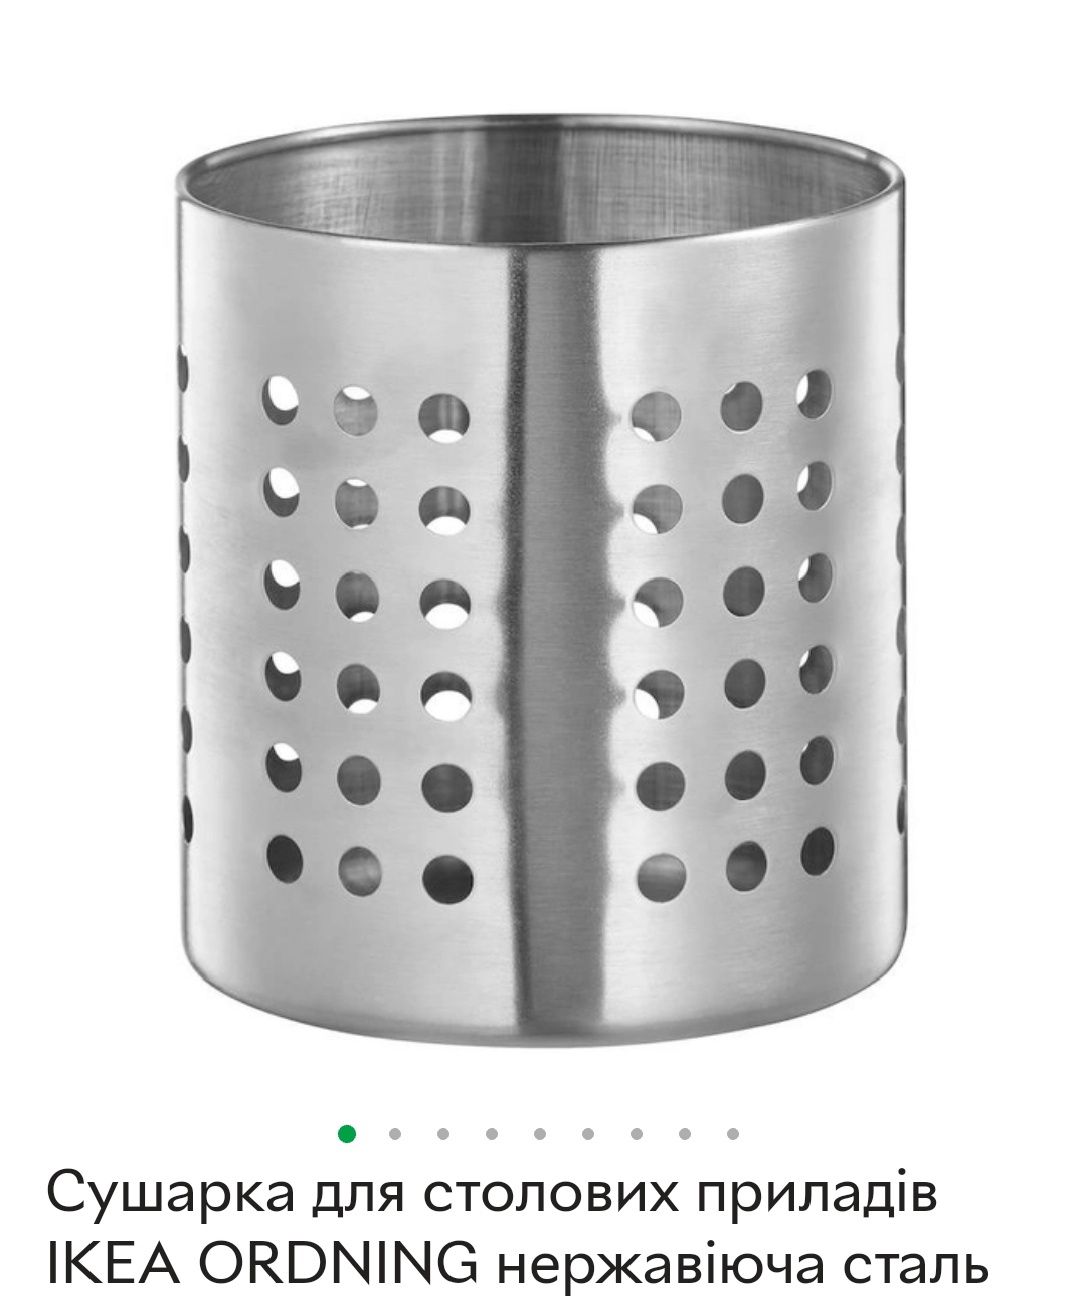 Сушарка для столових приладів IKEA ORDNING нержавіюча сталь